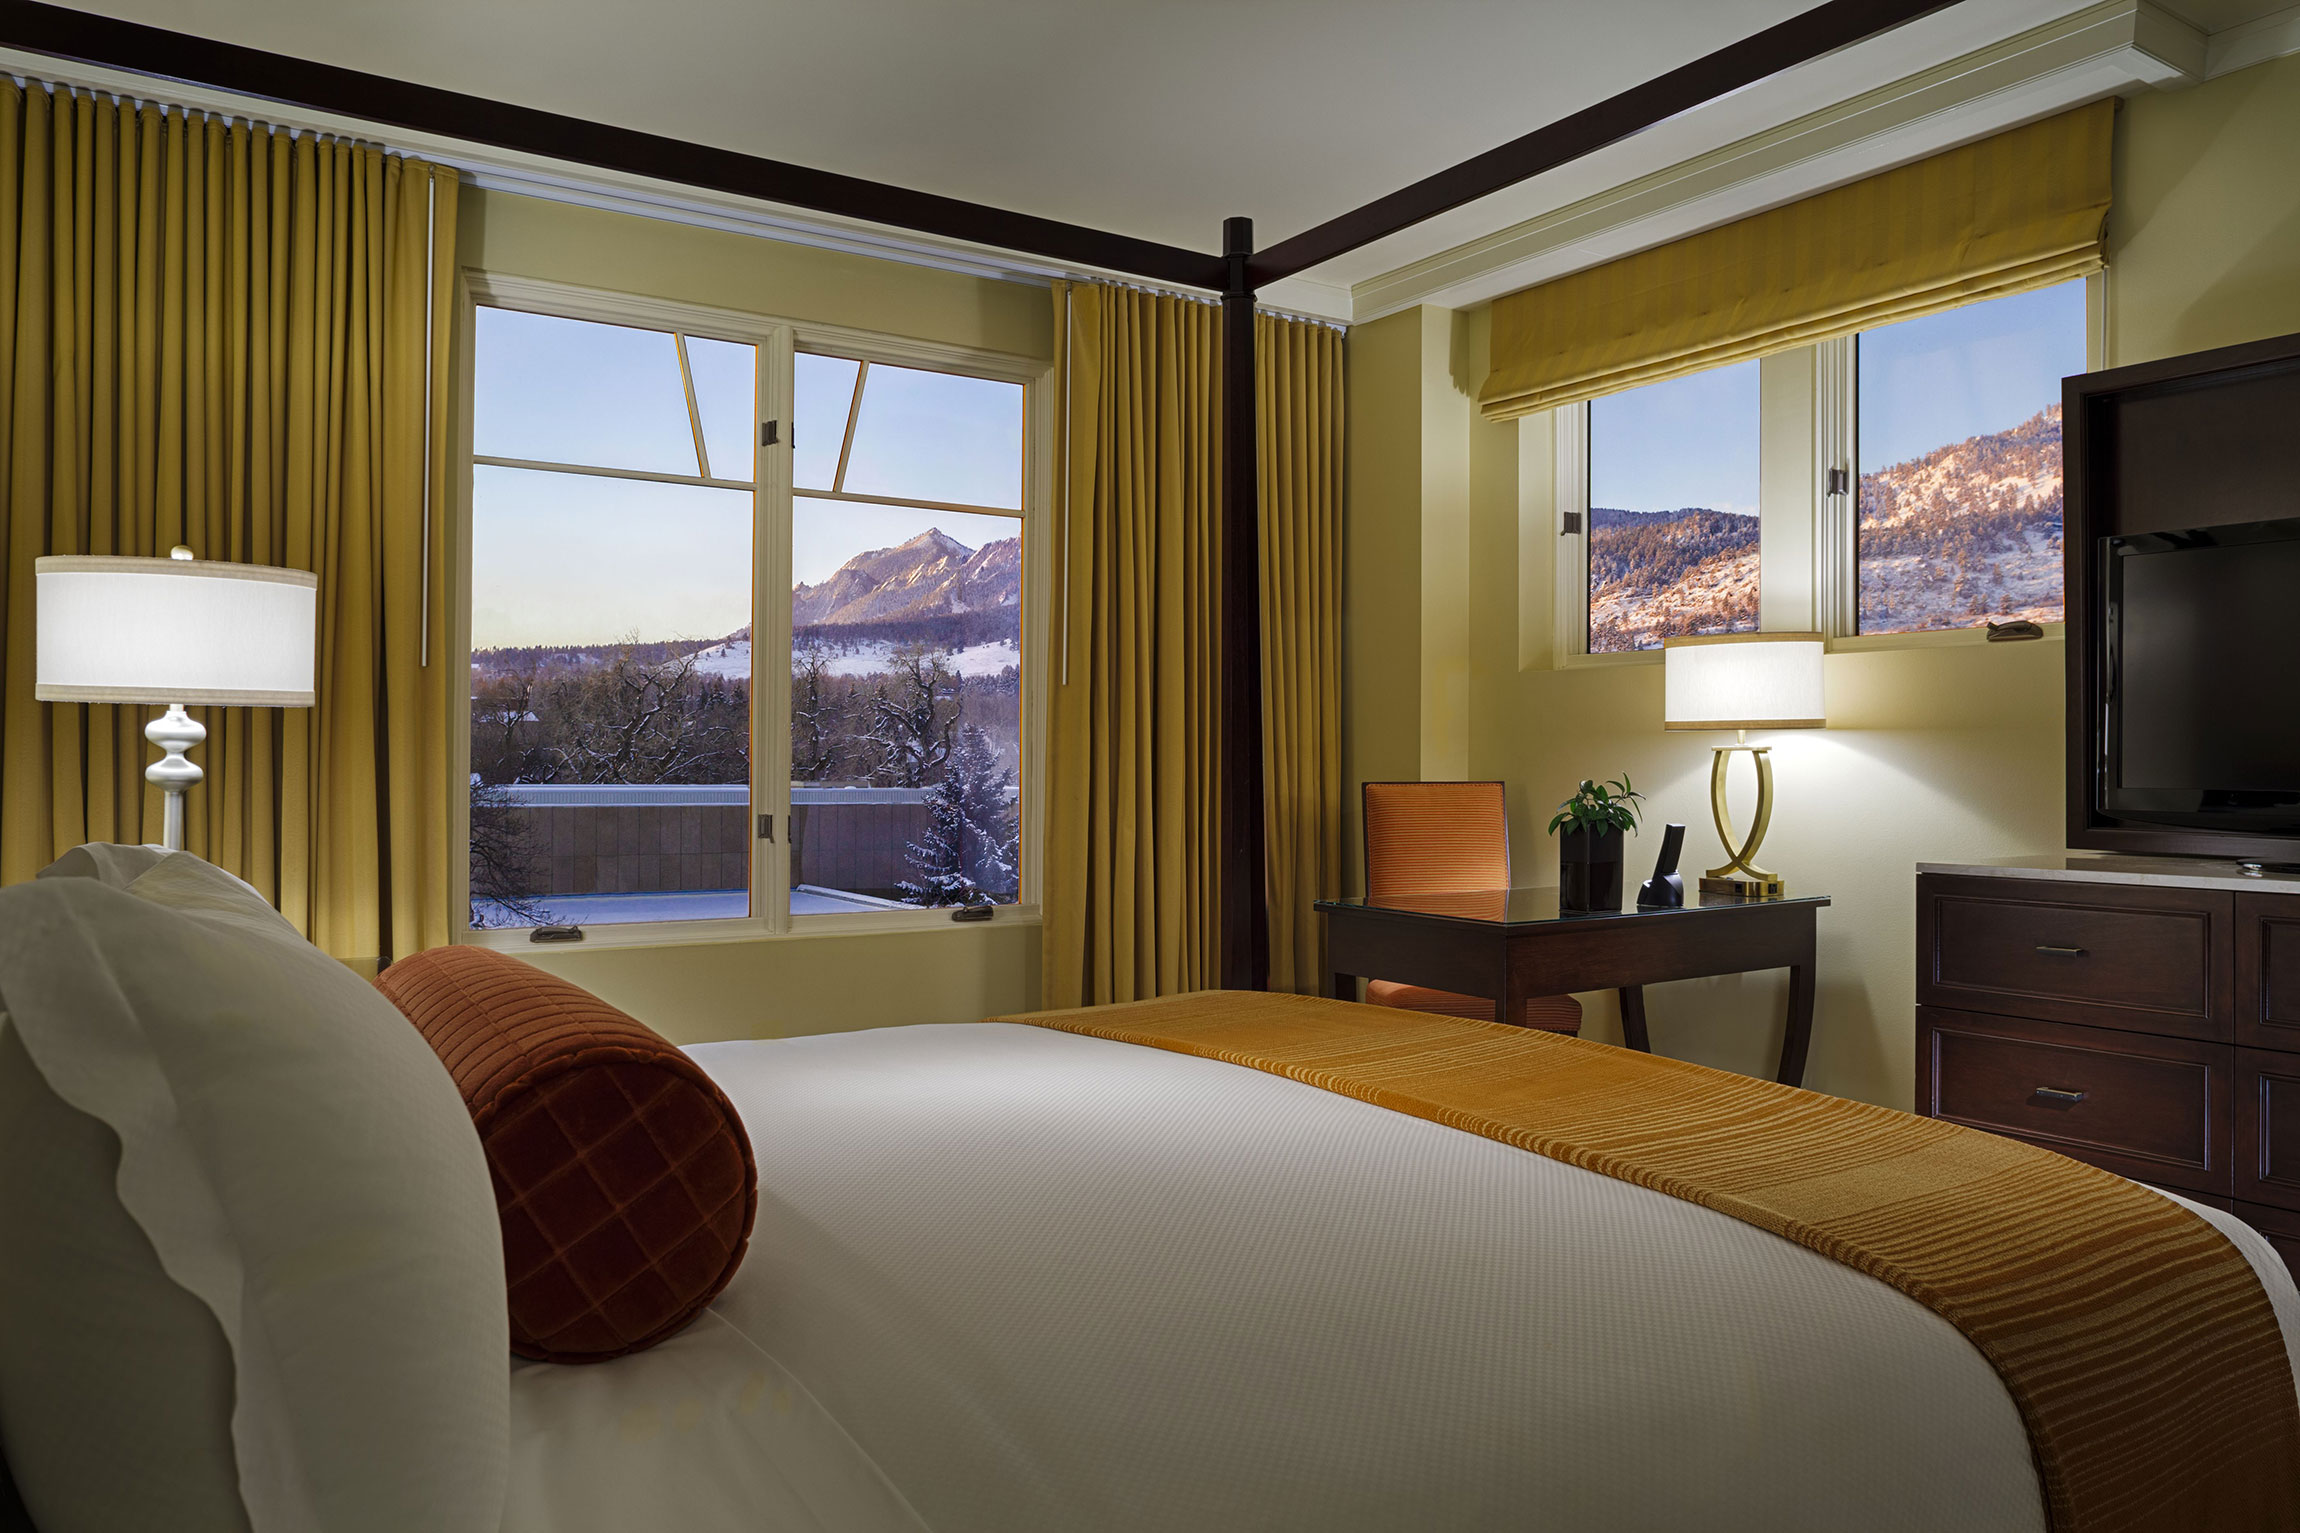 st julien suite bedroom with window view